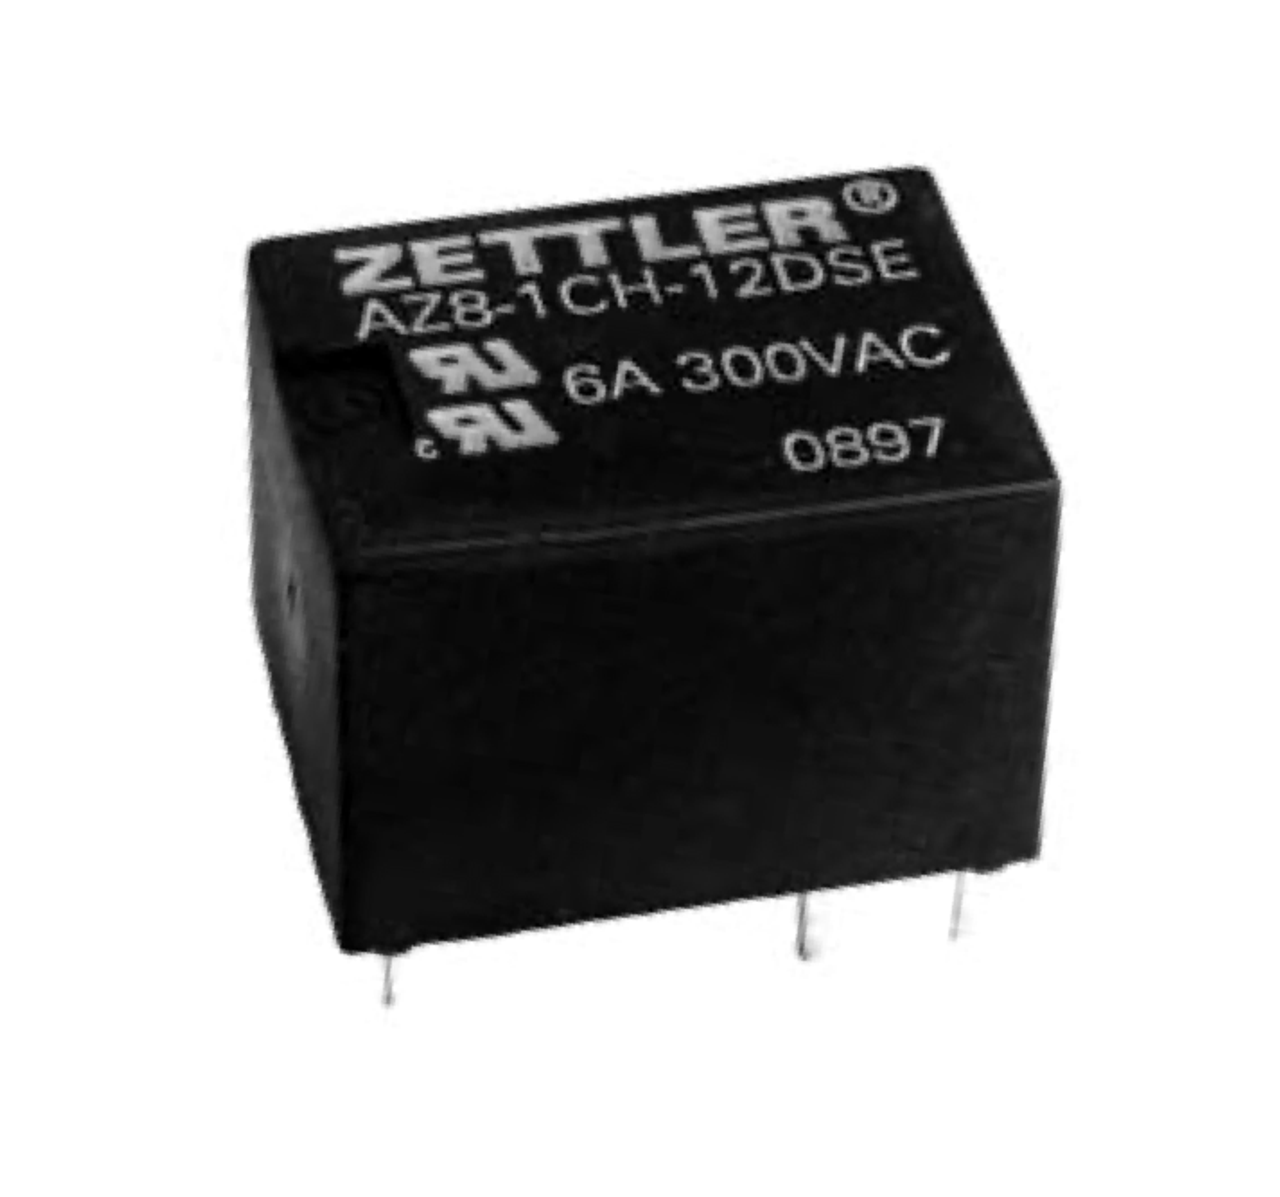 American Zettler AZ8-1CT-5DE Power Relay